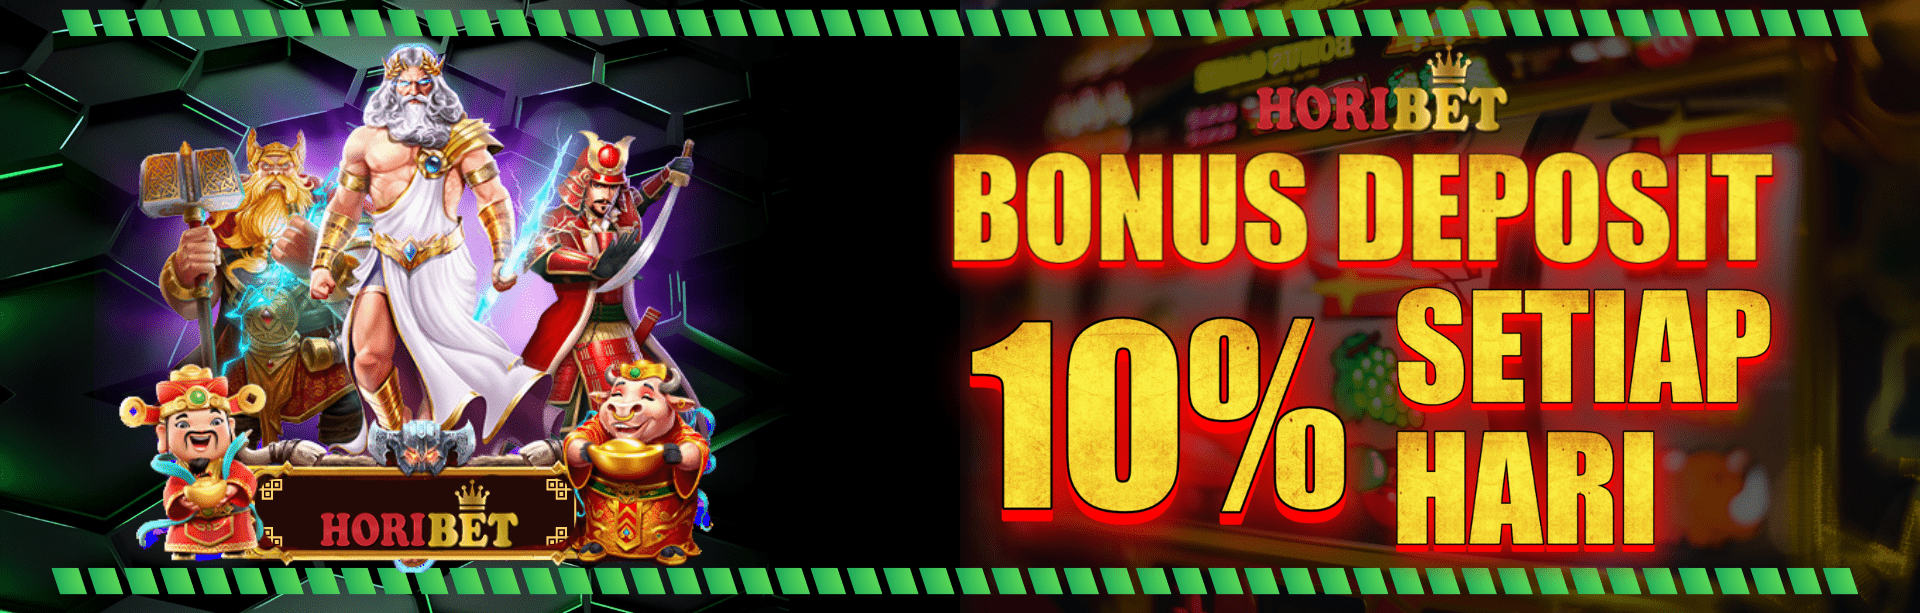 Bonus deposit 10%